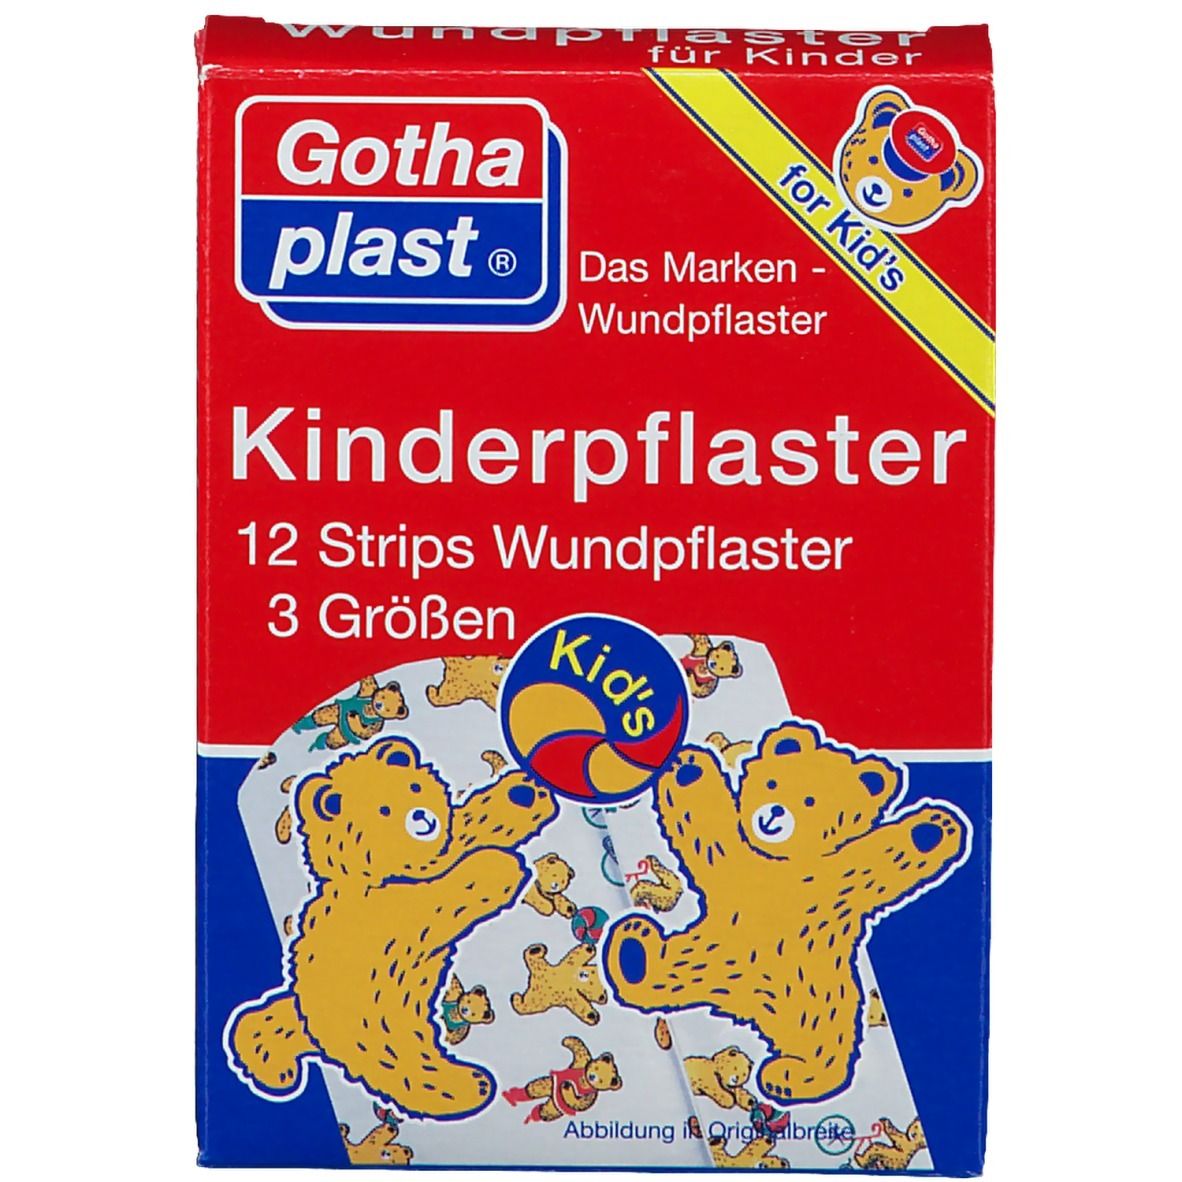 Gothaplast® Kinderpflaster-Bärchen